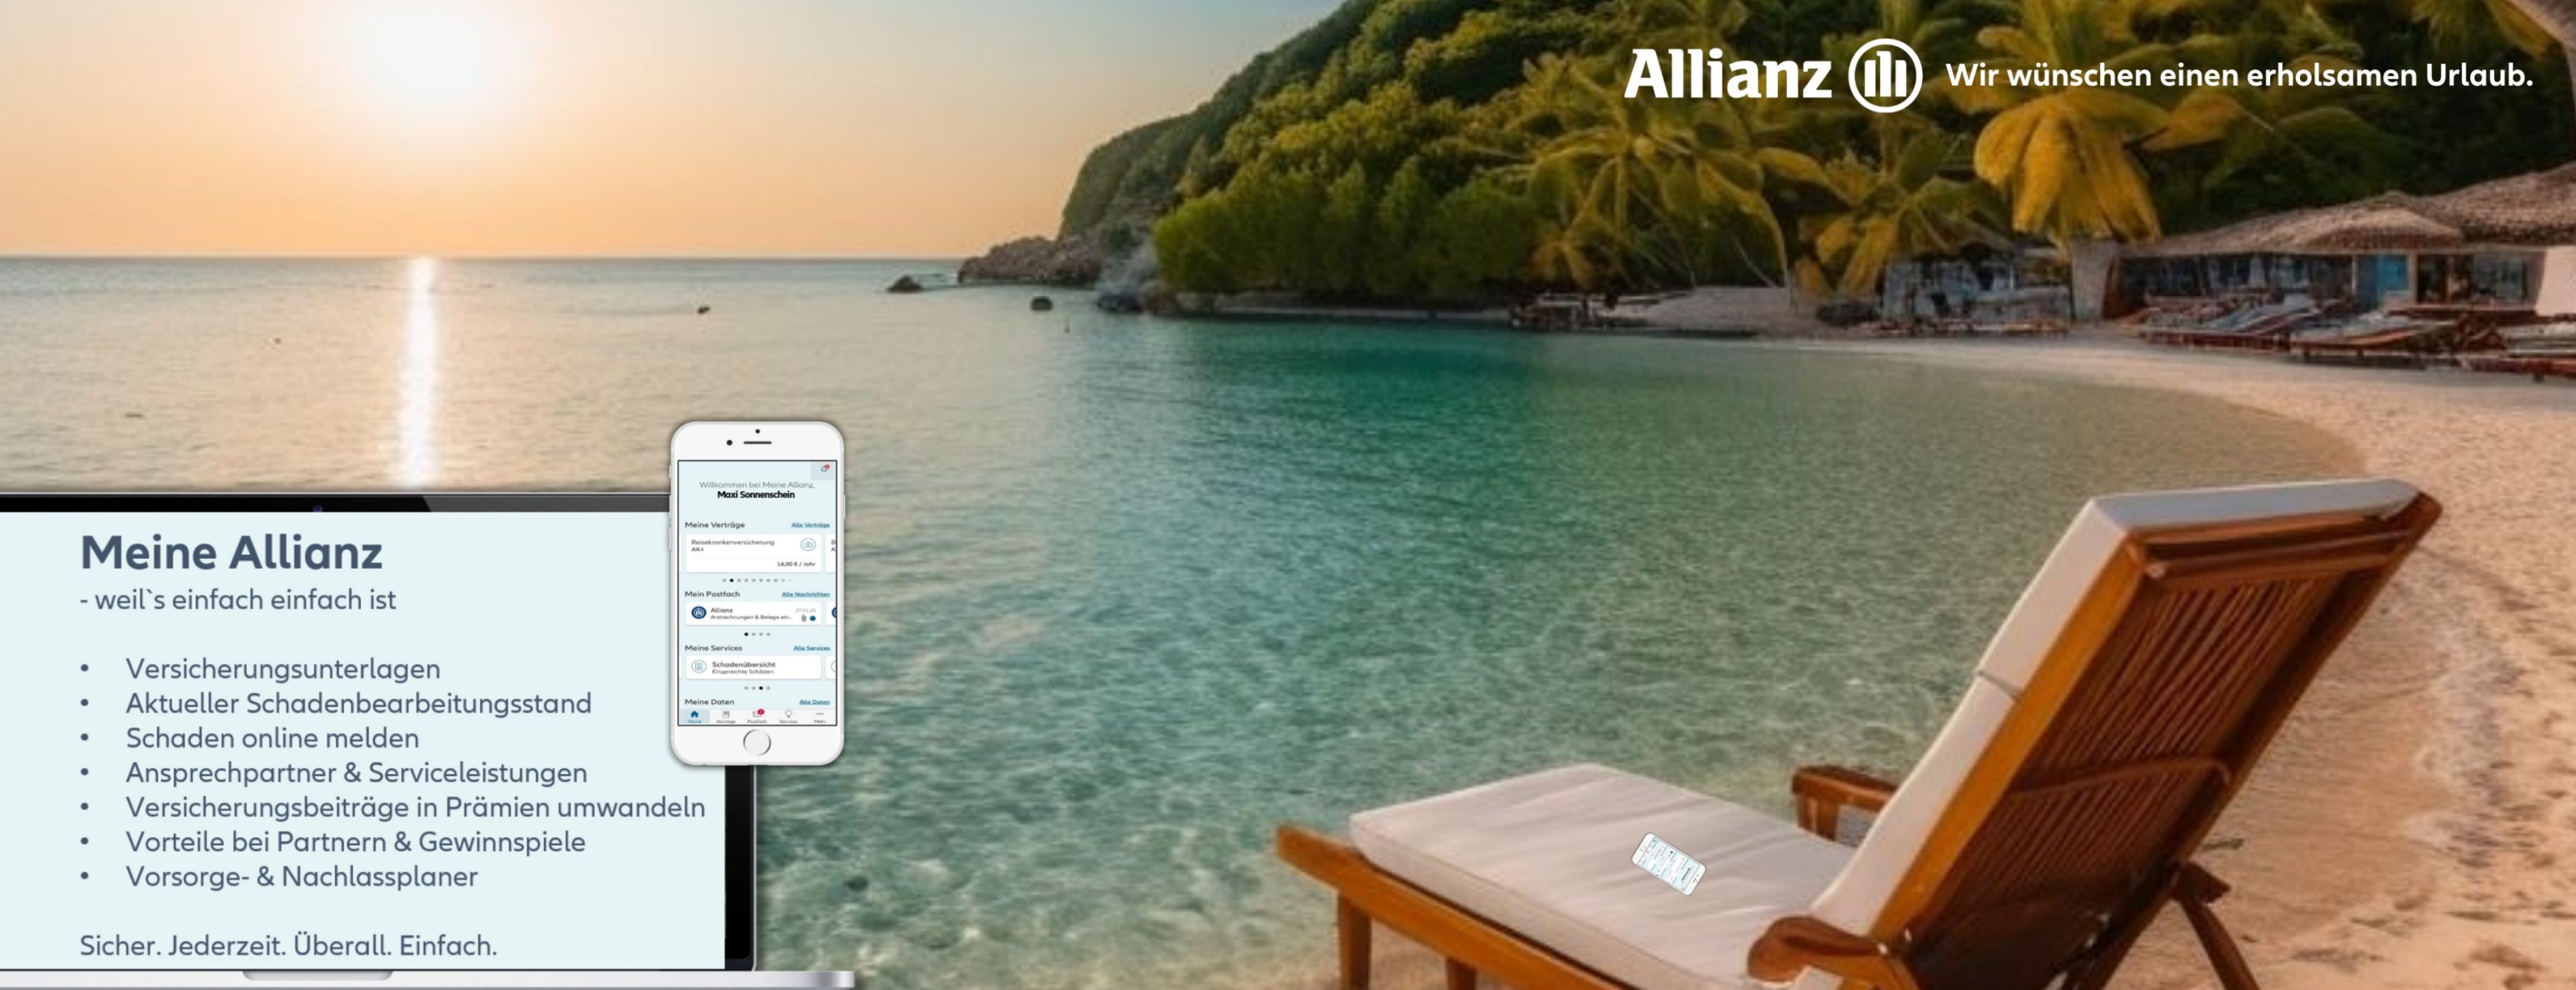 Allianz Versicherung Andreas Fuhrmann Berlin - Meine Allianz - wir wünschen erholsamen Urlaub